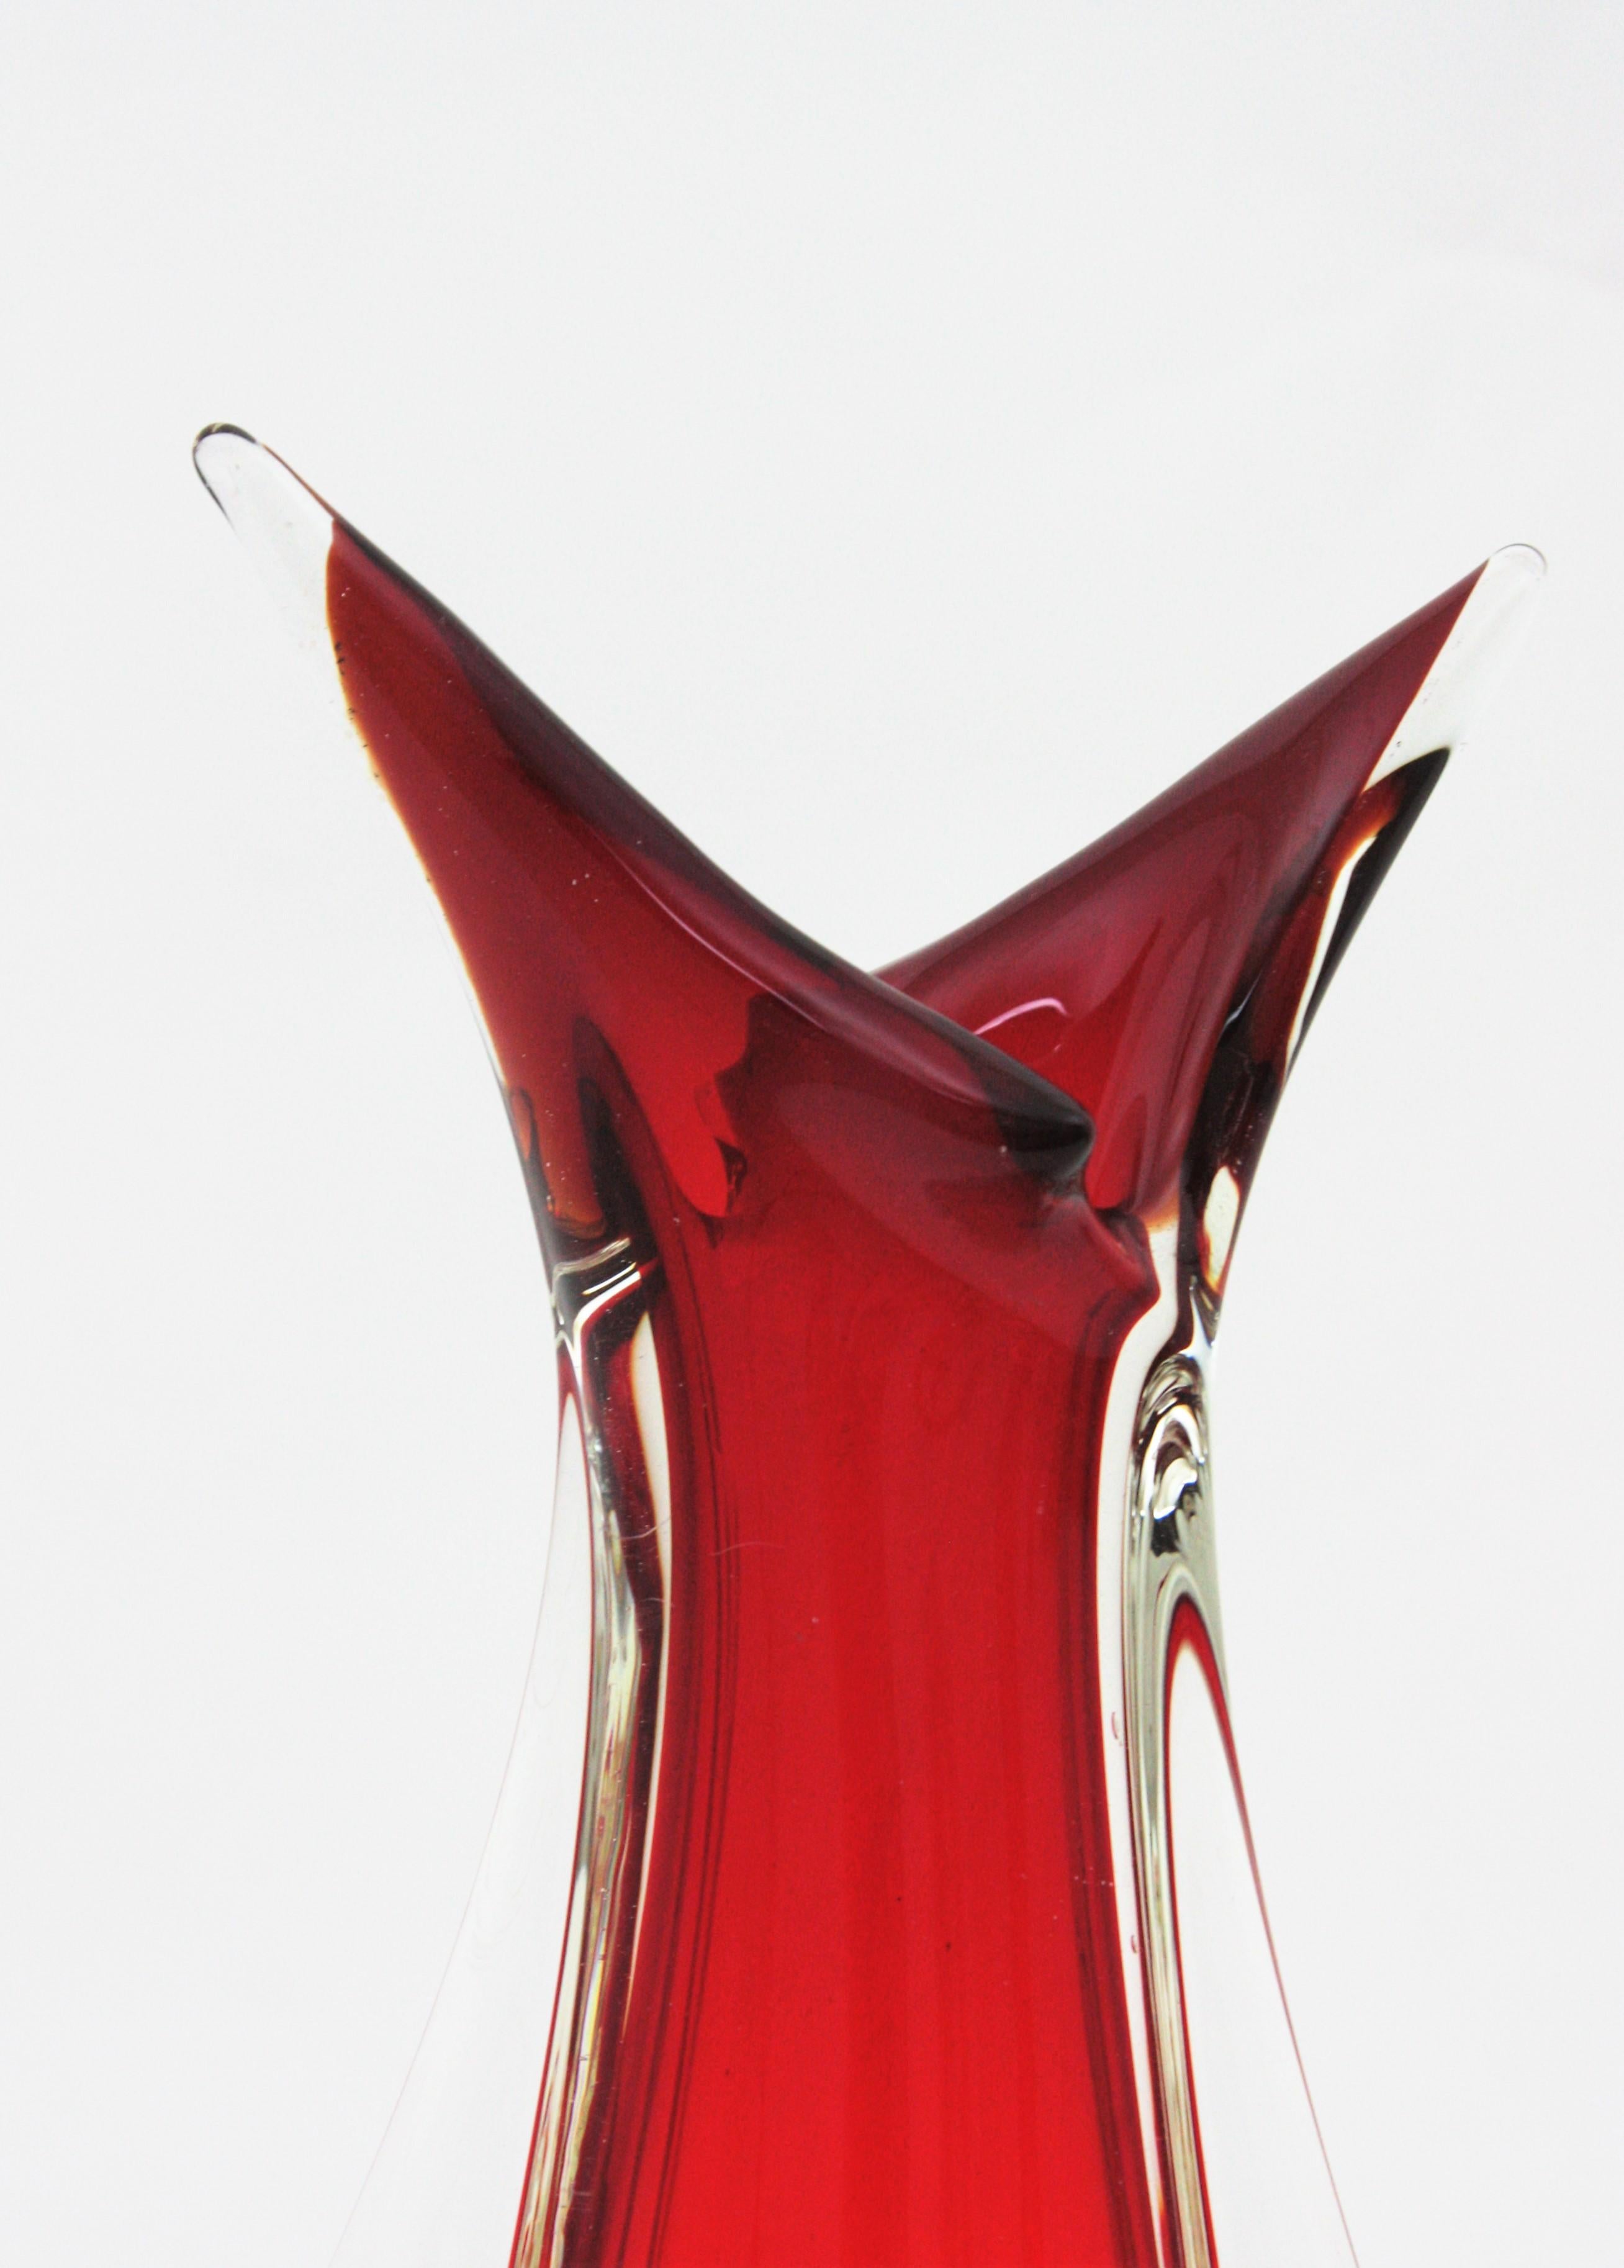 20th Century Flavio Poli Seguso Red Orange Sommerso Murano Art Glass Vase For Sale